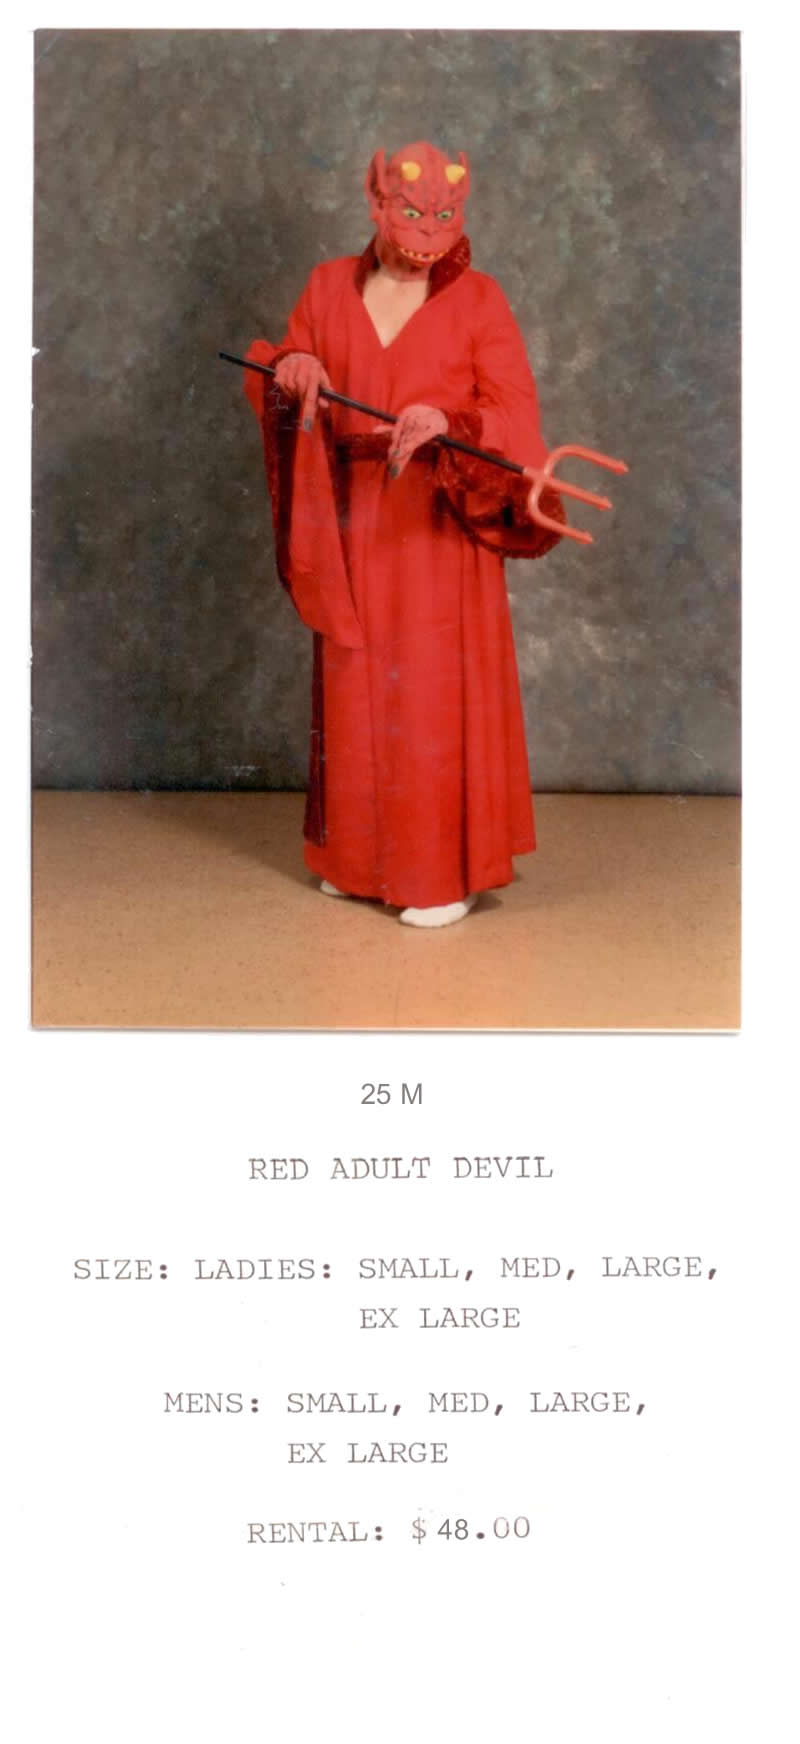 RED DEVIL - ADULT